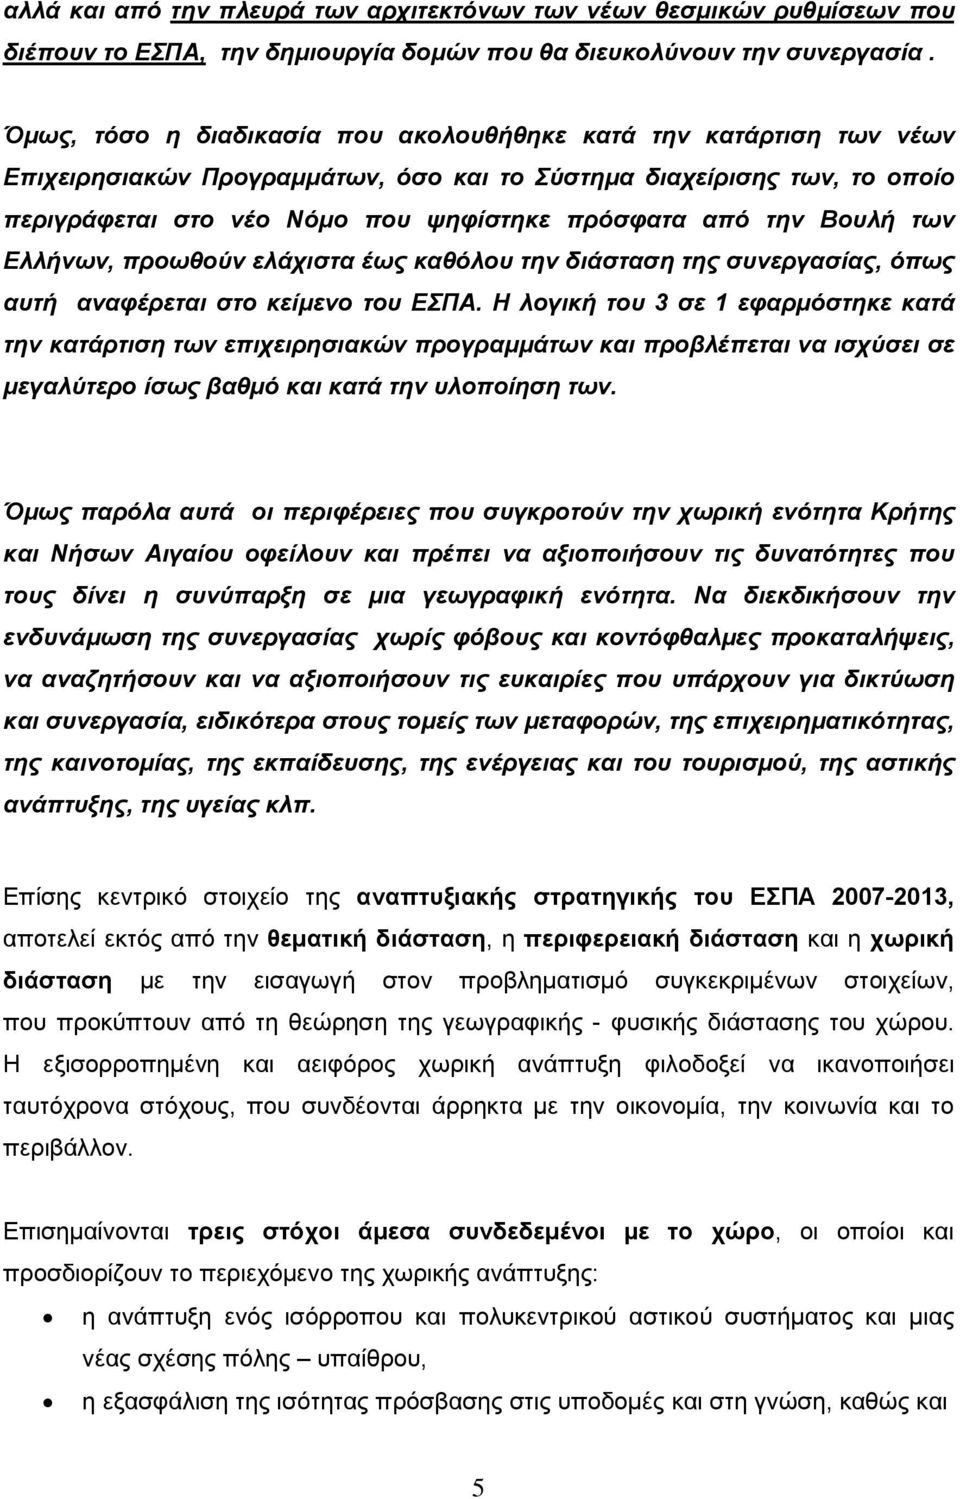 Βουλή των Ελλήνων, προωθούν ελάχιστα έως καθόλου την διάσταση της συνεργασίας, όπως αυτή αναφέρεται στο κείµενο του ΕΣΠΑ.